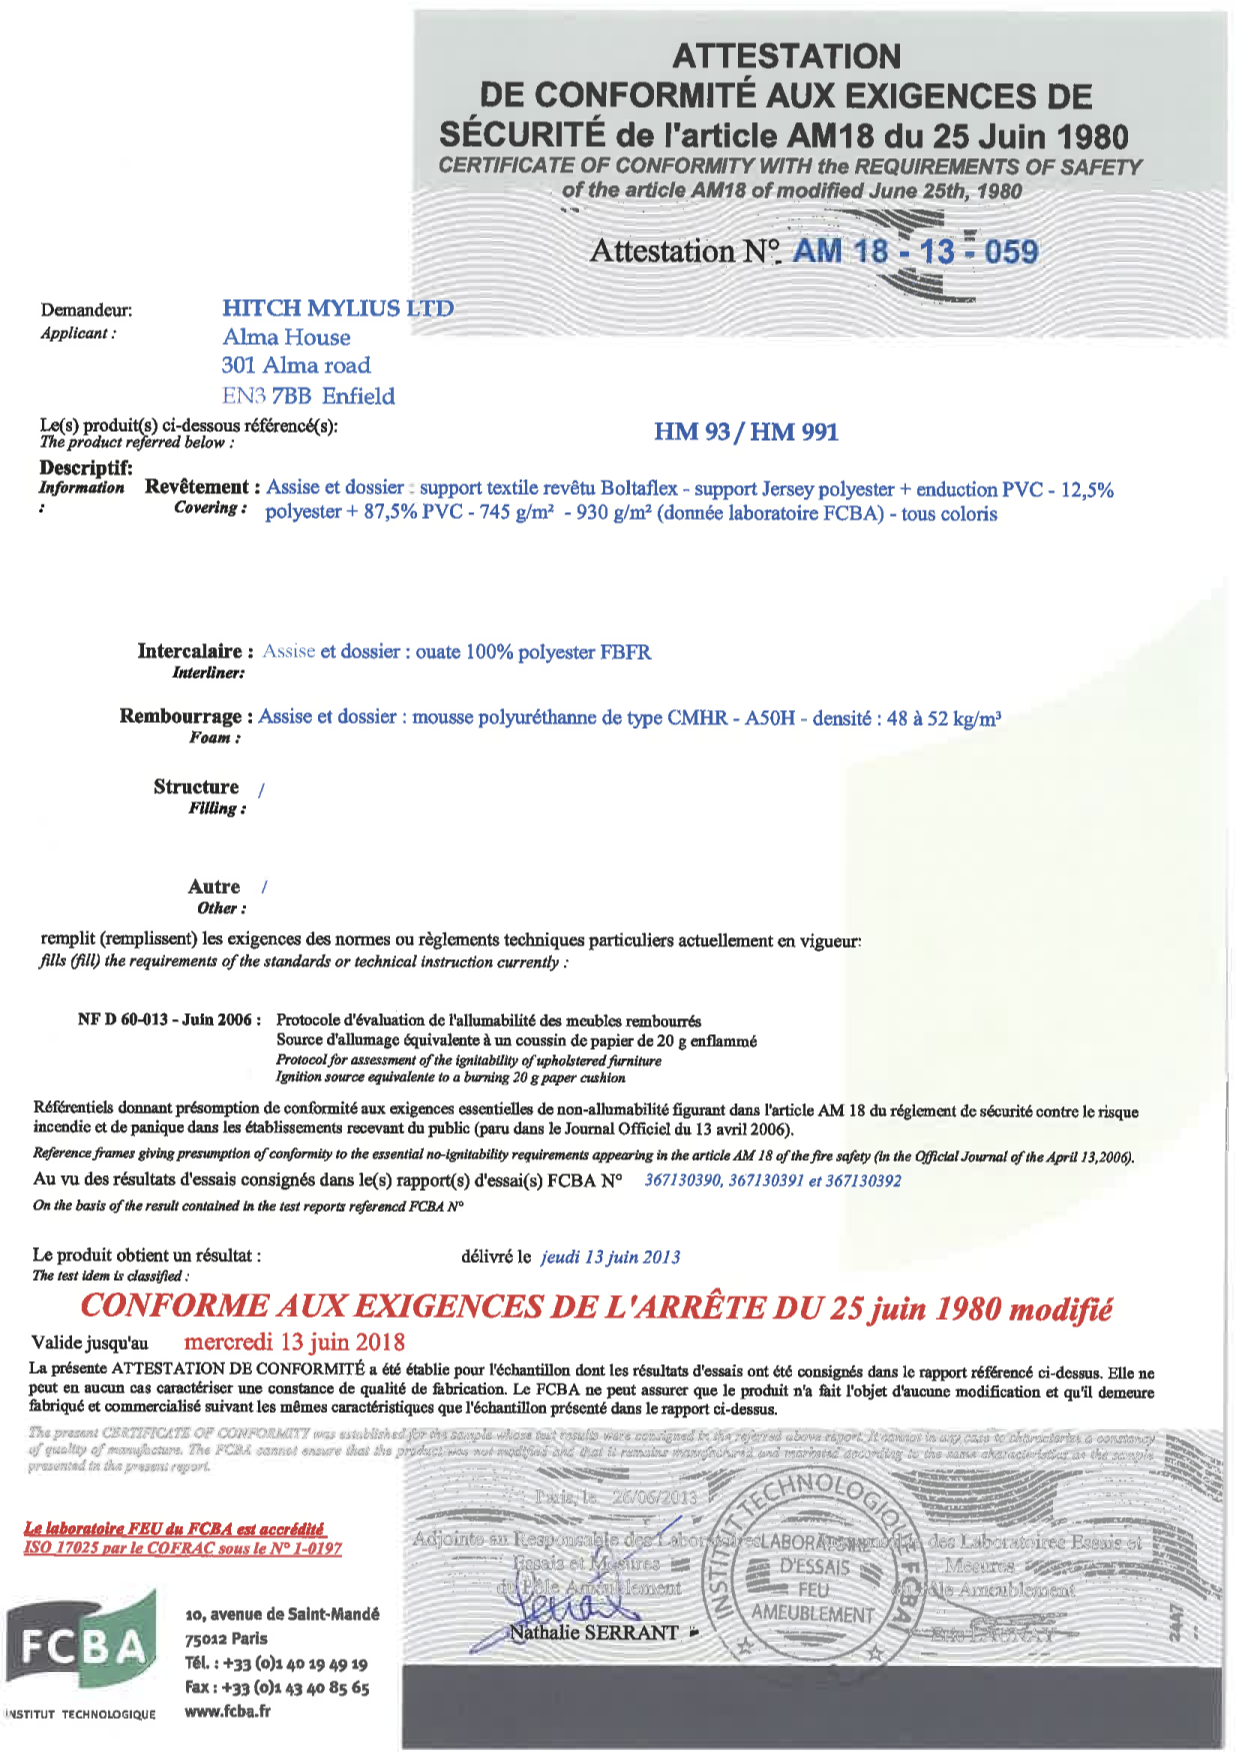 Certificat AM18 hm93&991 Boltaflex